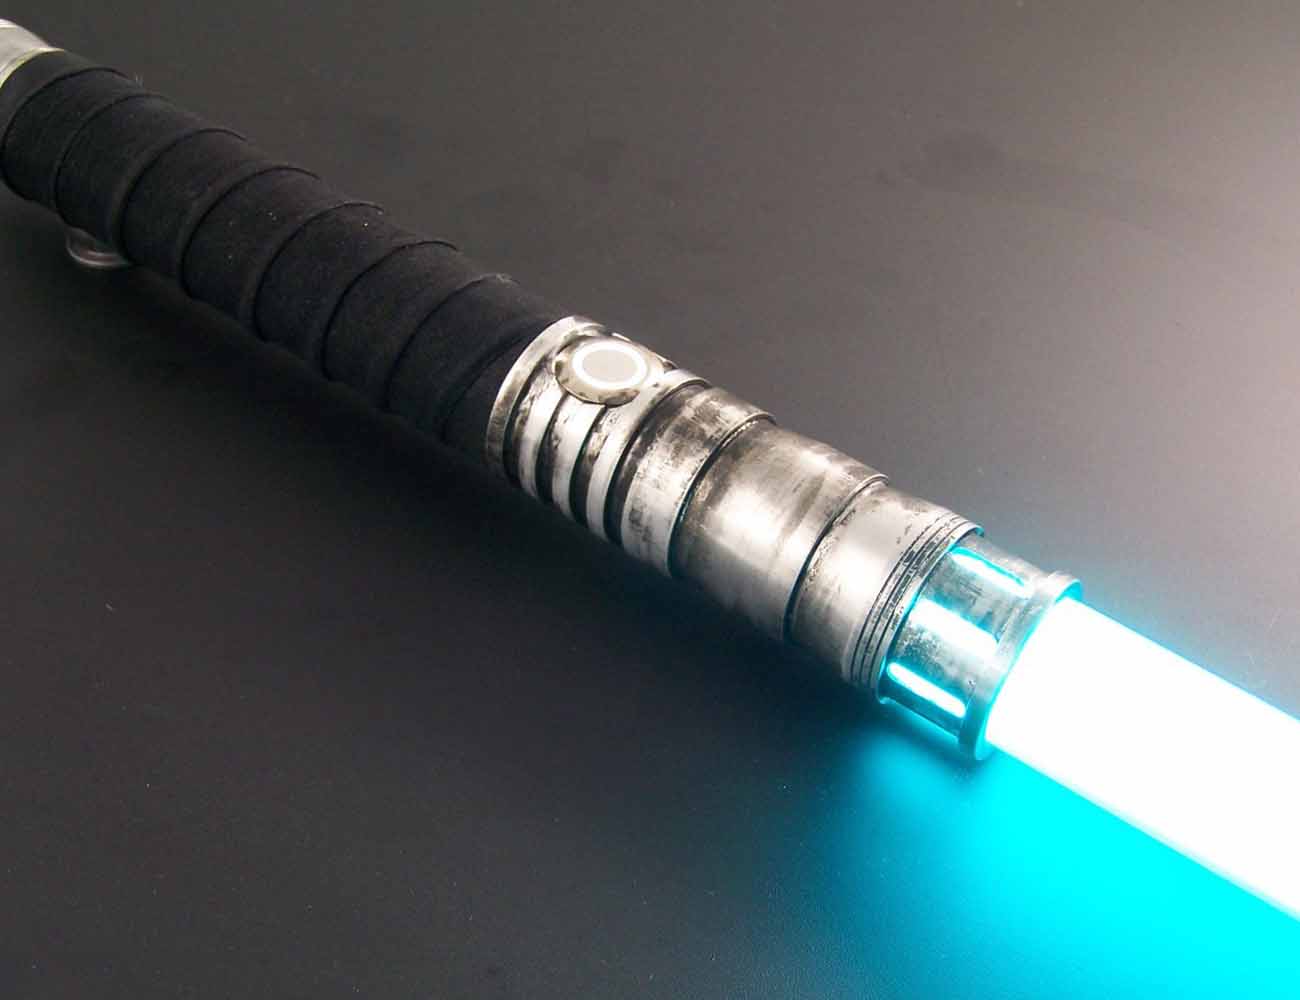 rebaslight making a dark saber